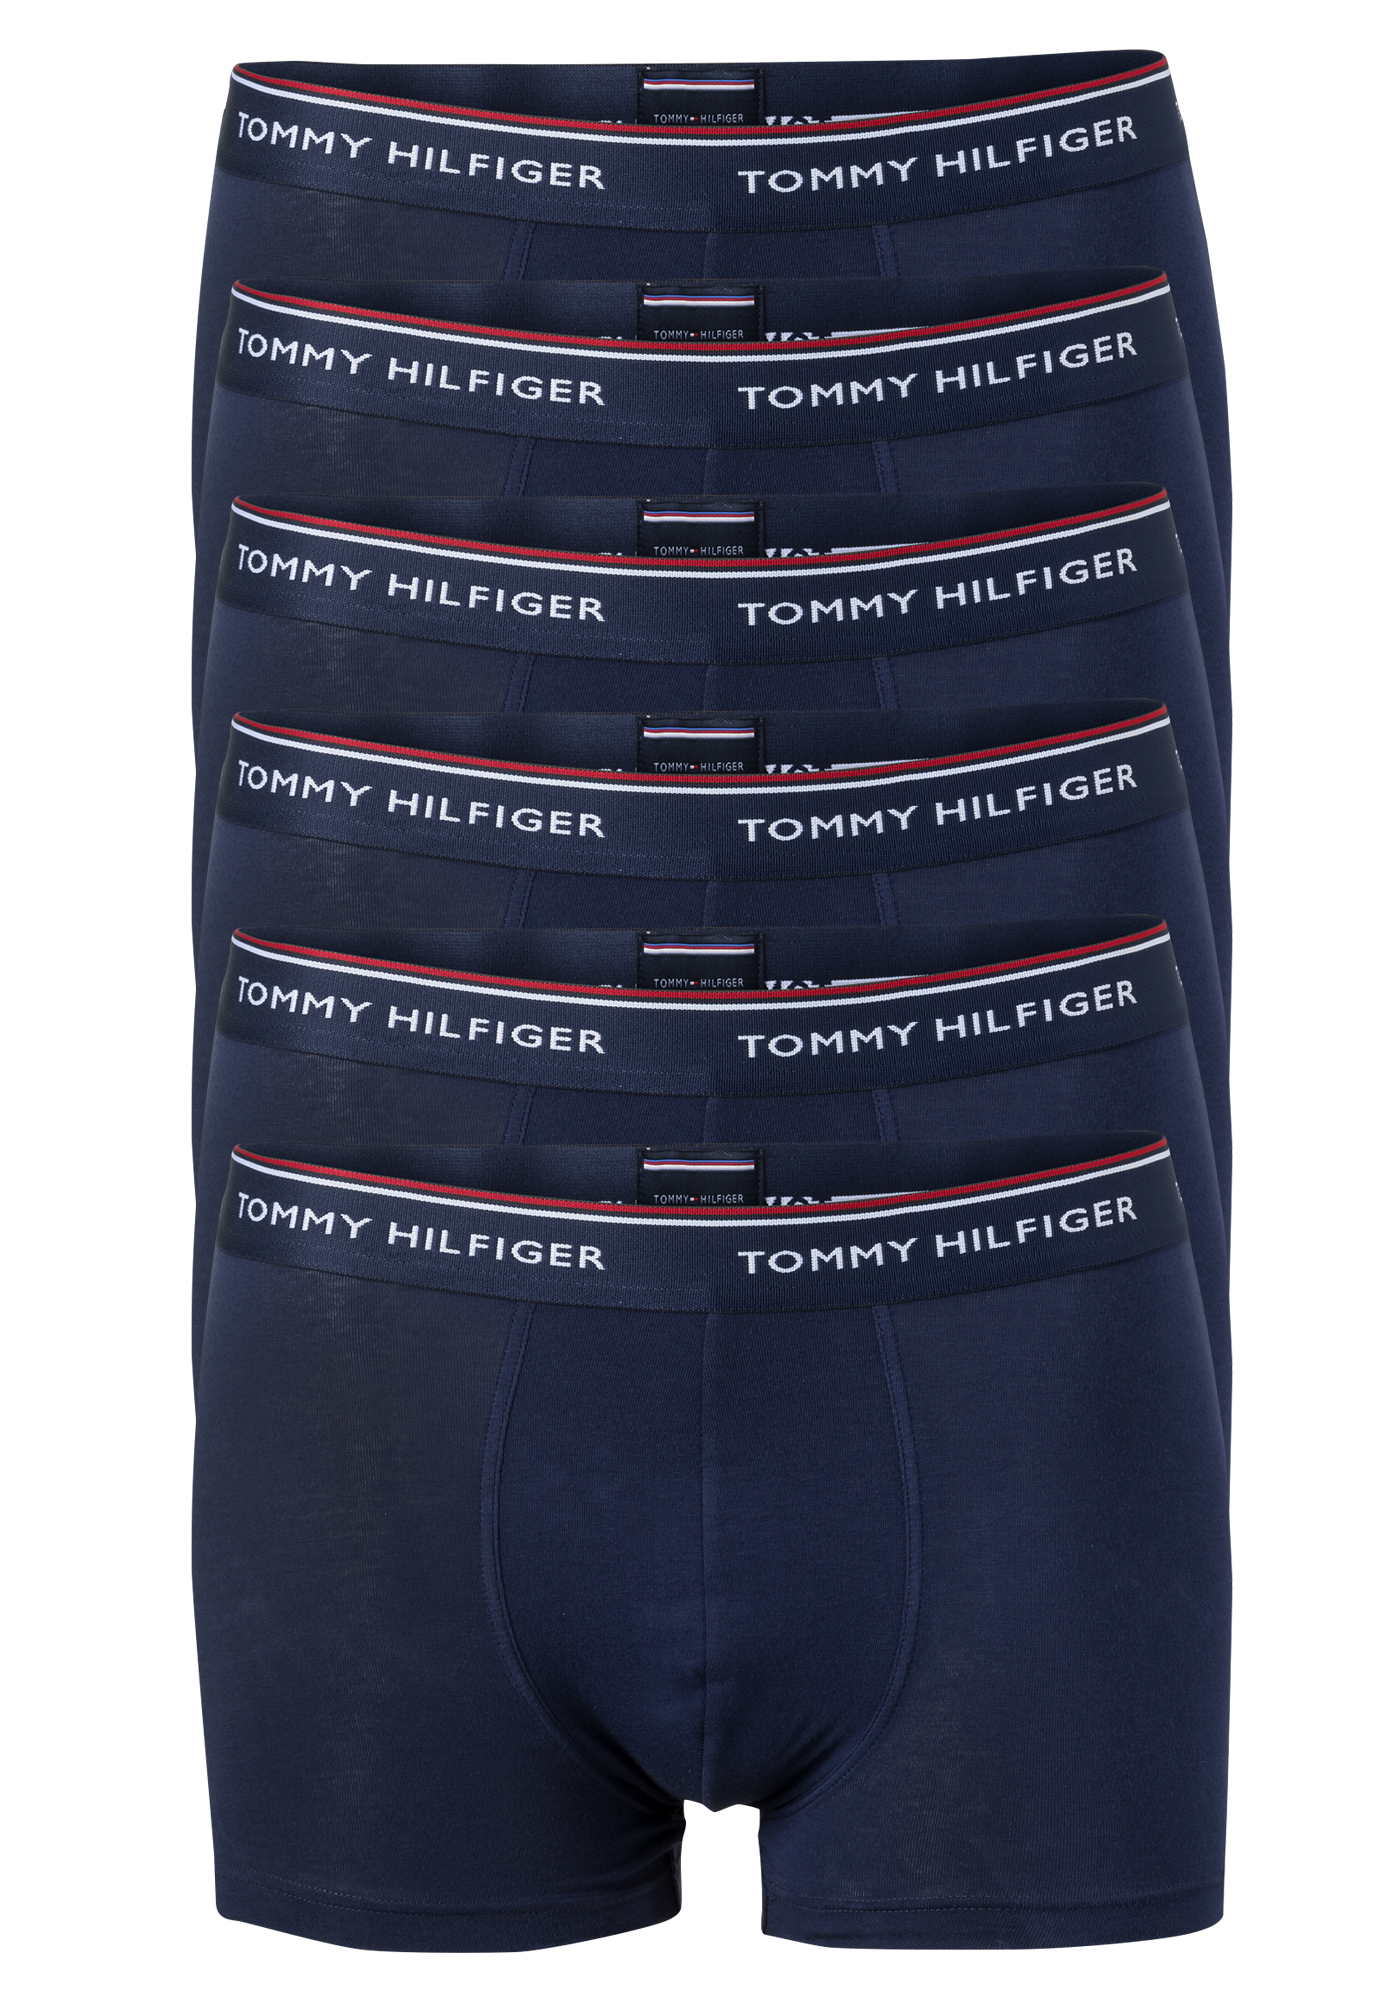 Tommy Hilfiger (2x 3-pack), boxers normale lengte, - Gratis verzending en retour